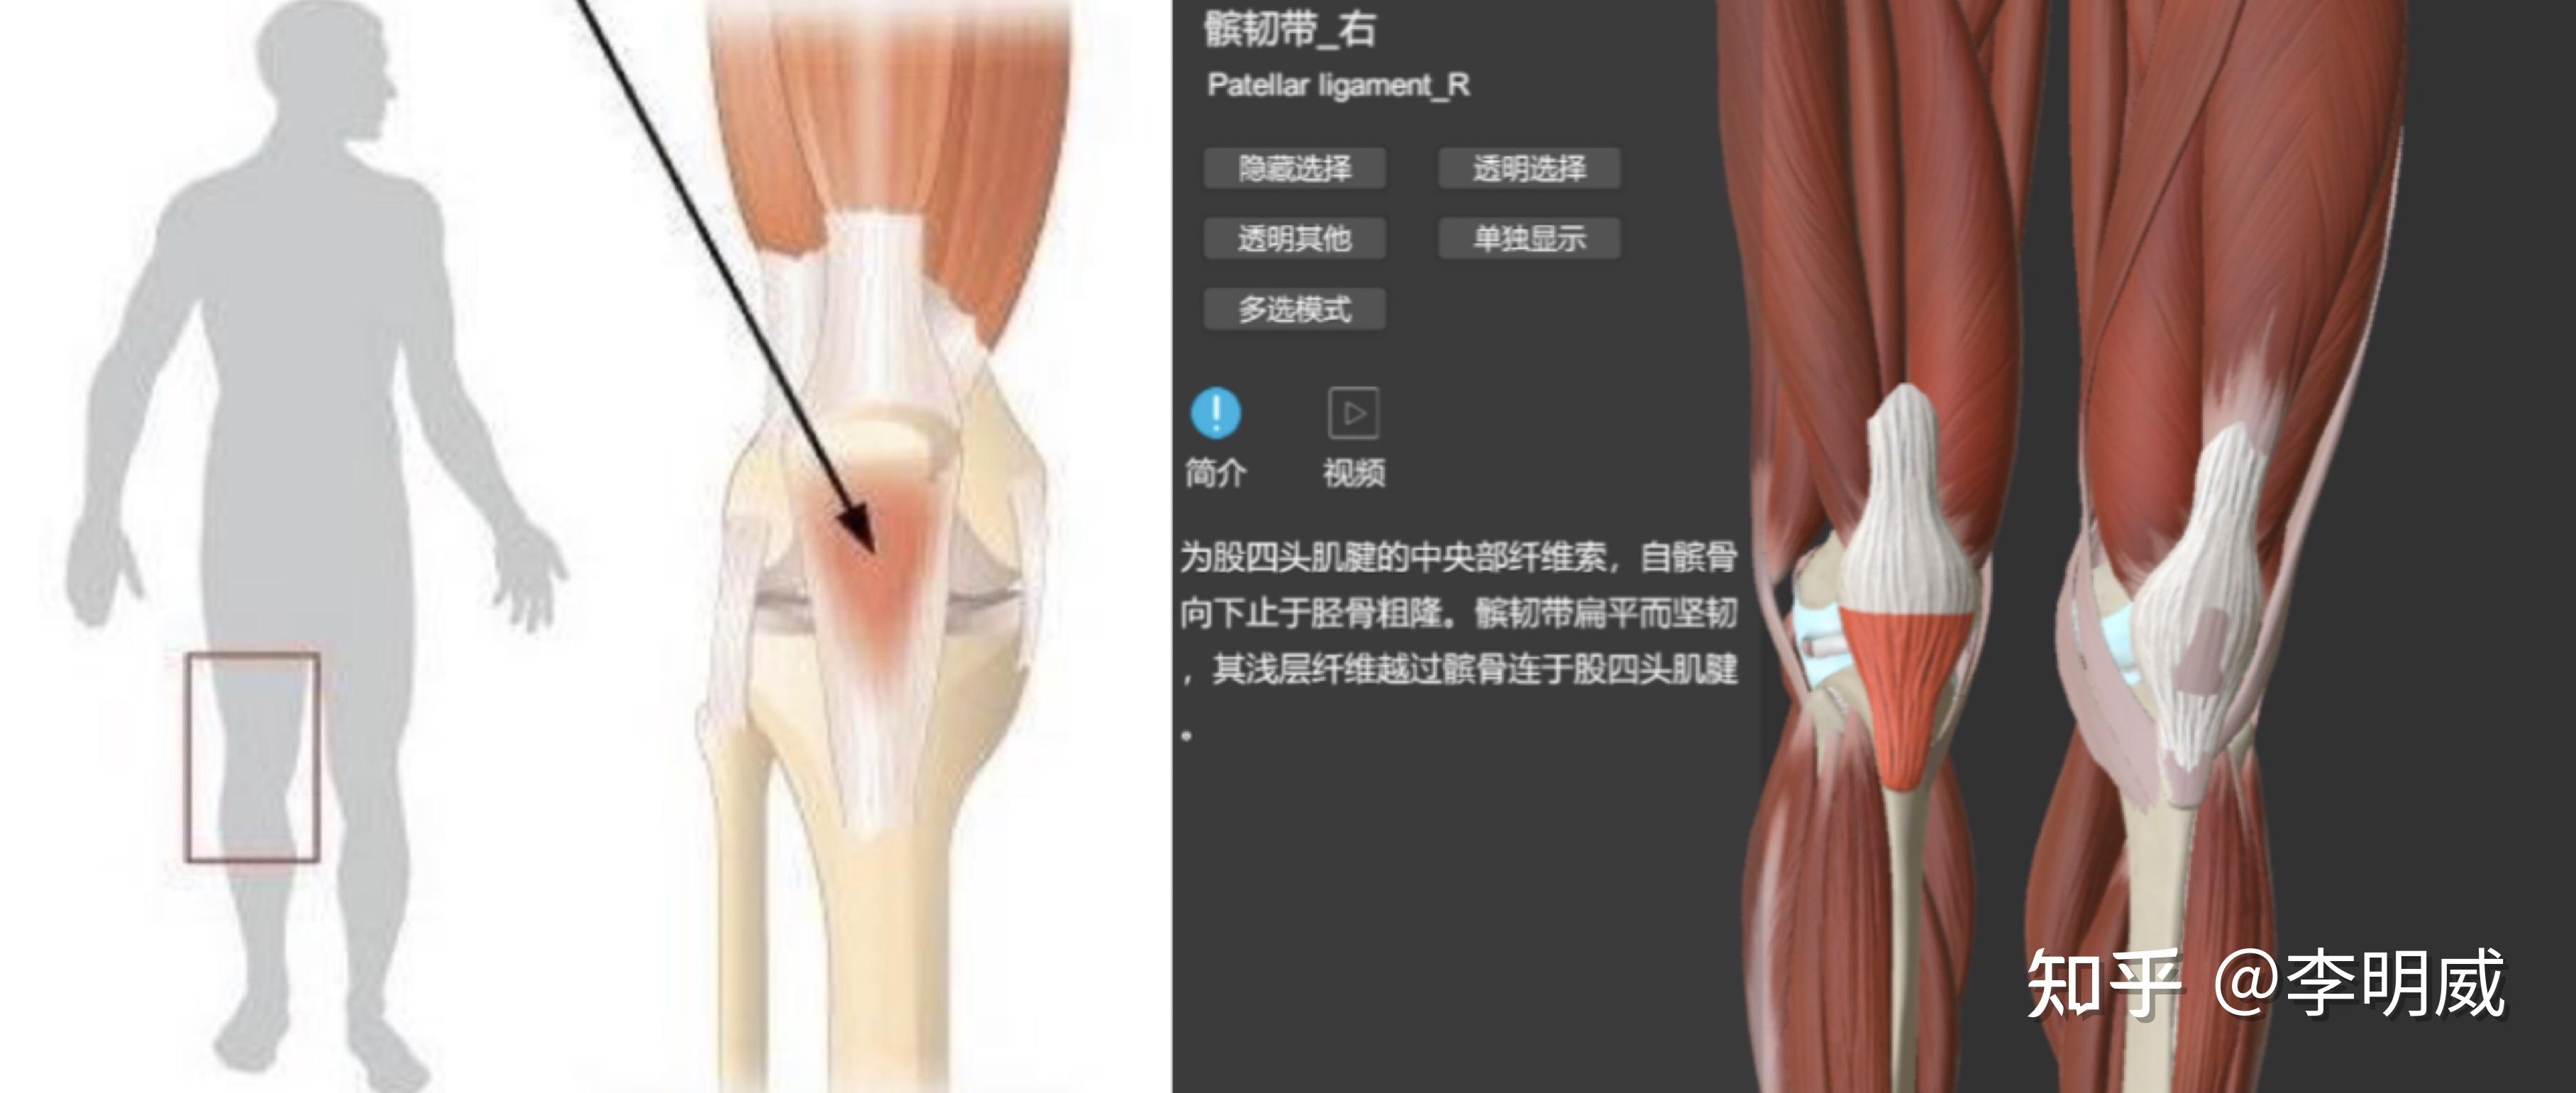 李明威:膝盖下方位置疼痛,是什么原因?应该如何解决?